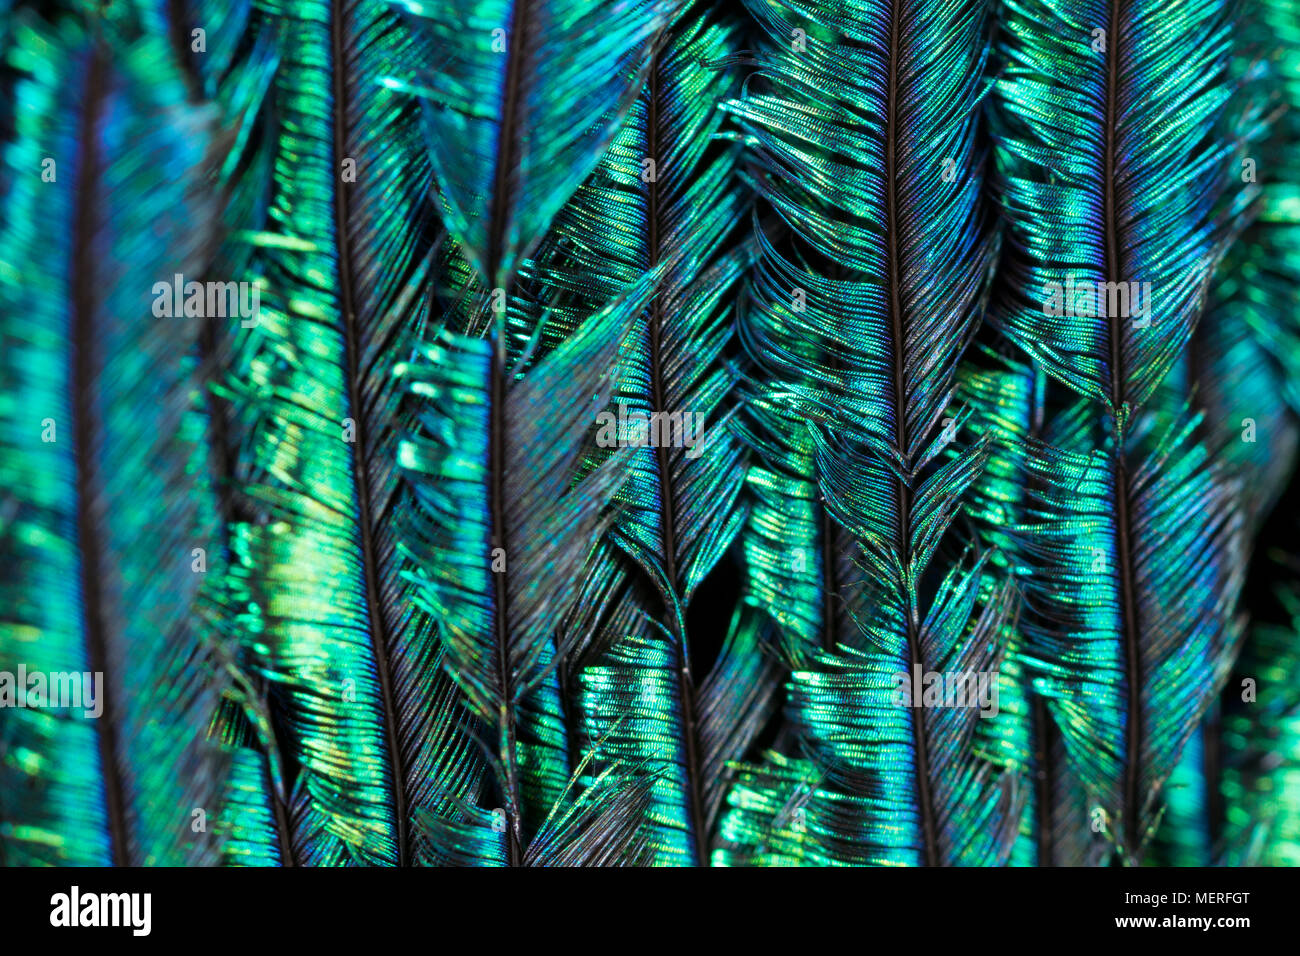 Nahaufnahme Bild der Federstruktur und Farben aus der Schwanzfedern eines häuslich Indischen Pfau Pavo cristatus. Lancashire England UK GB Stockfoto